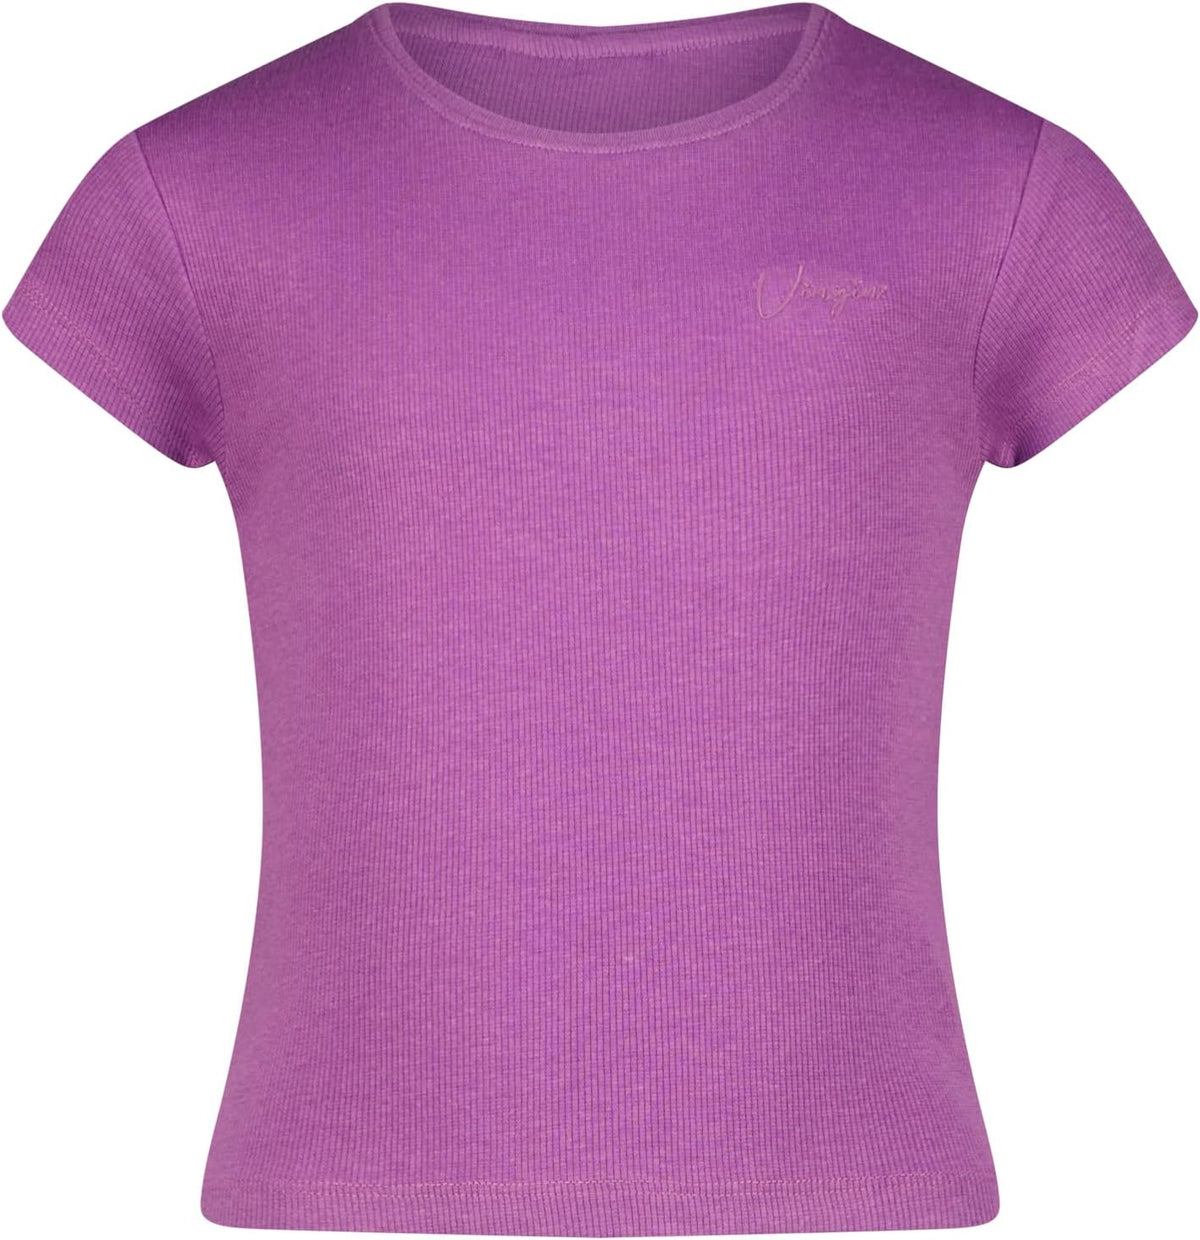 Mädchen T-Shirt Basic Crop Tee Sorbet Pink